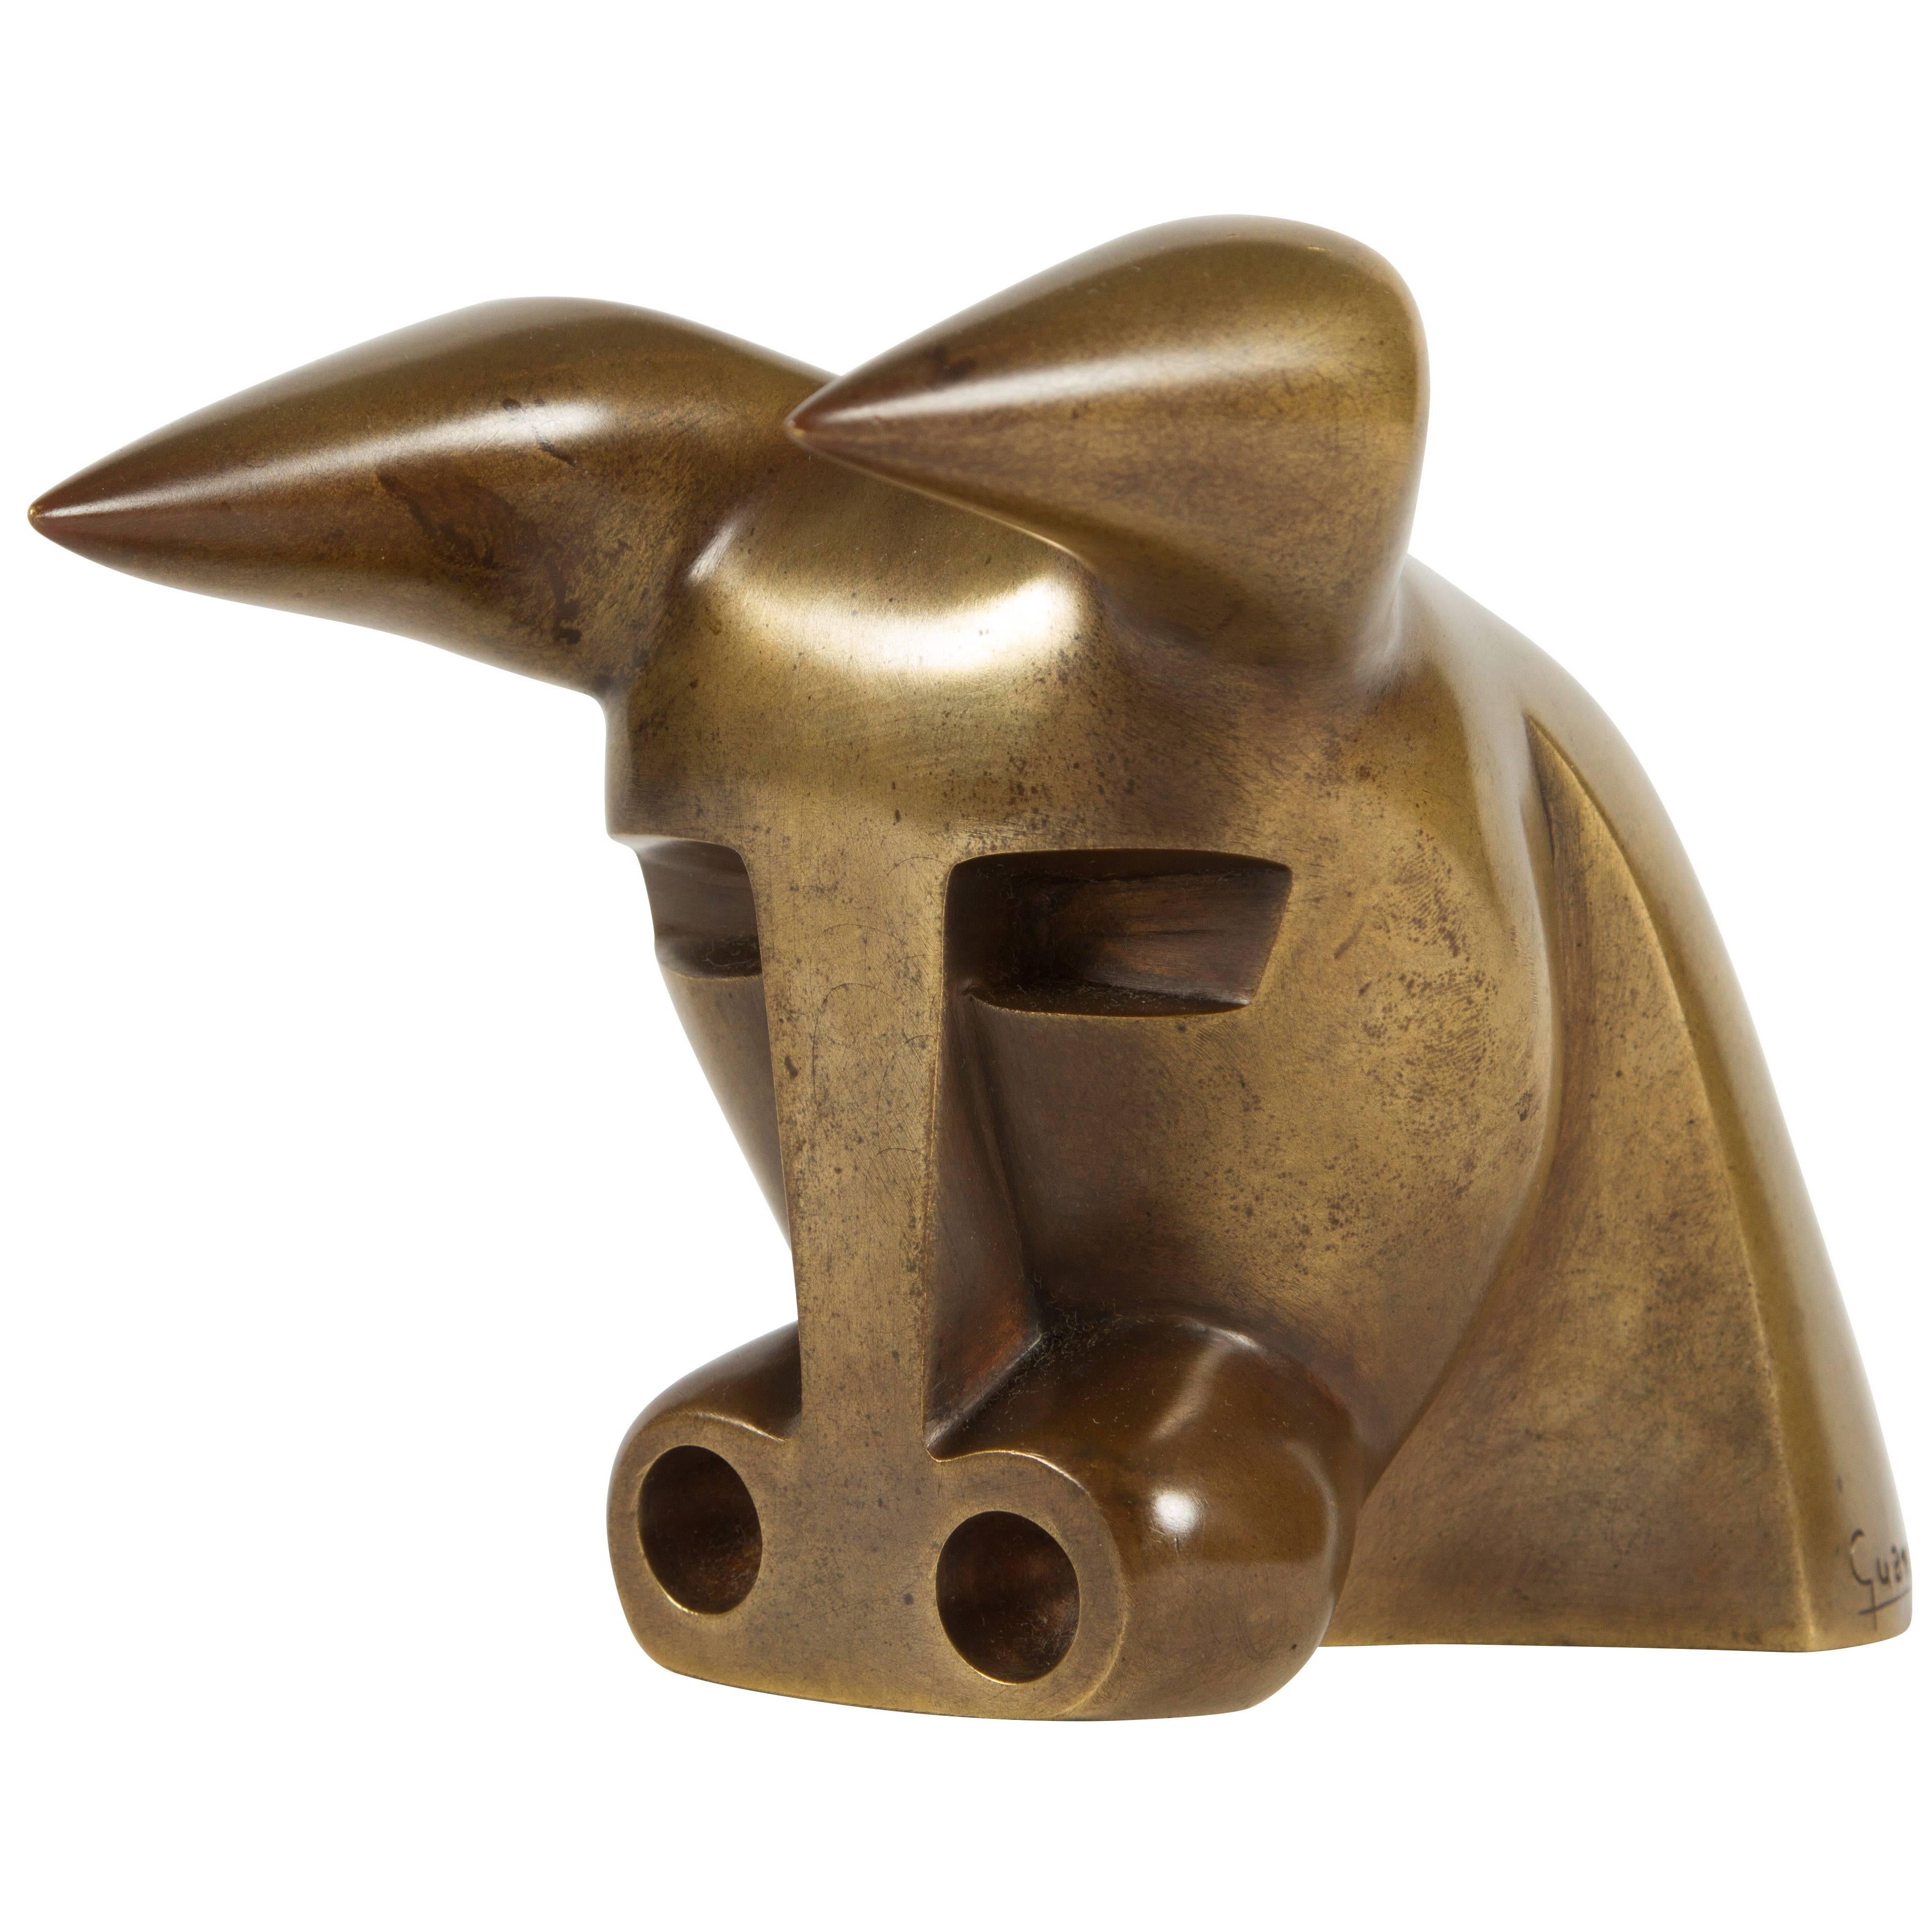 Modernist Bull's Head Sculpture by Antonio Guansé